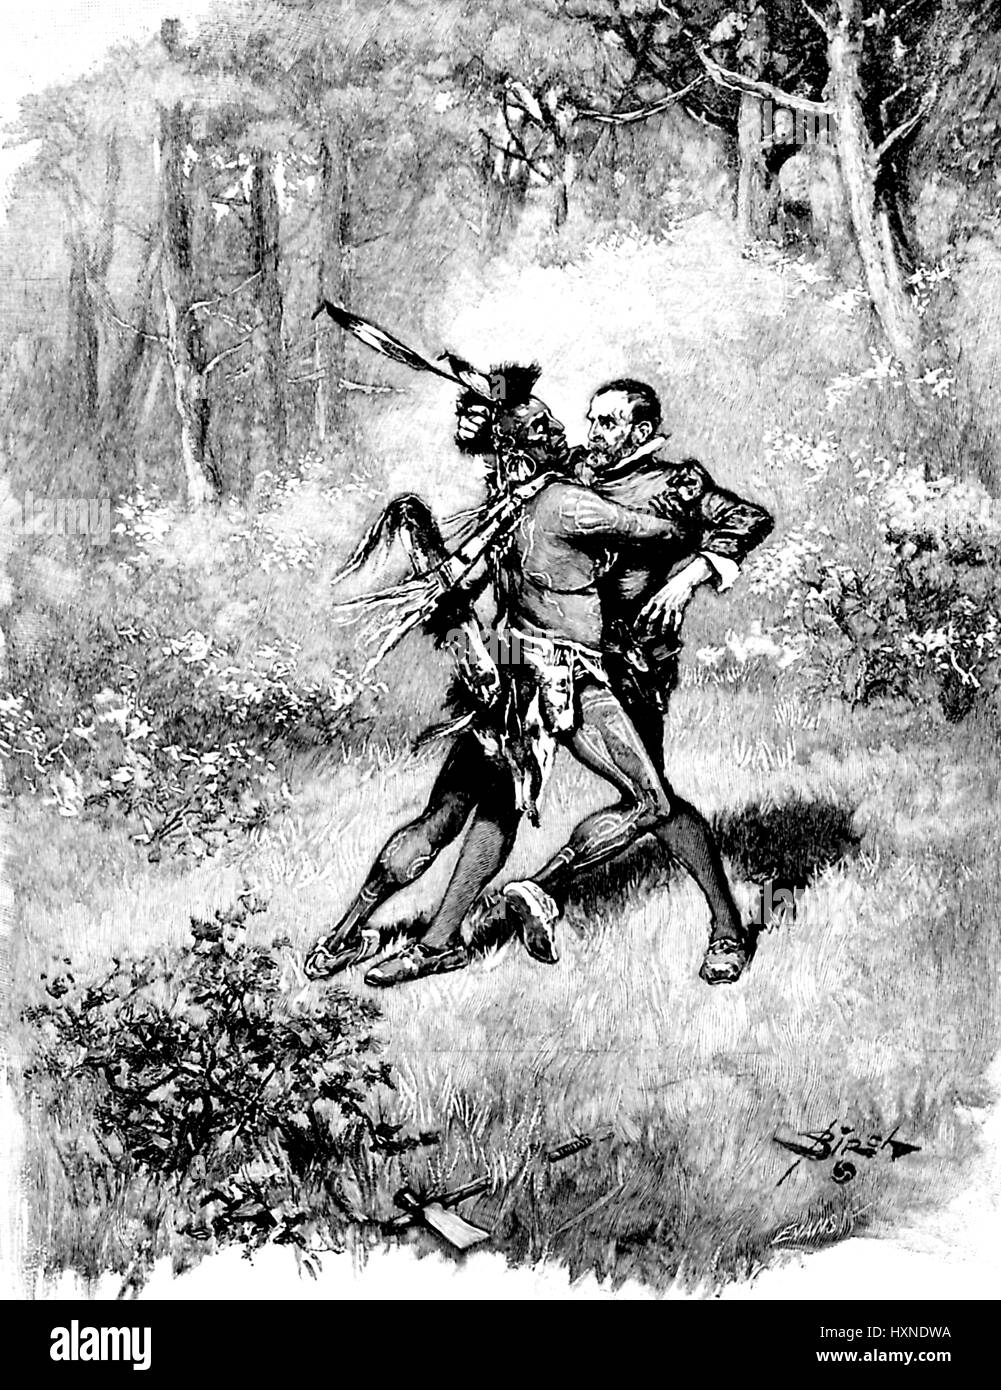 Abbildung von einem indianischen Mann mit einer Feder Kopfschmuck und traditionellen Kleid Angriff überraschte koloniale amerikanische Siedler in einem Waldgebiet, ursprünglich unter dem Titel The Native und der Einwanderer, 1896. Stockfoto